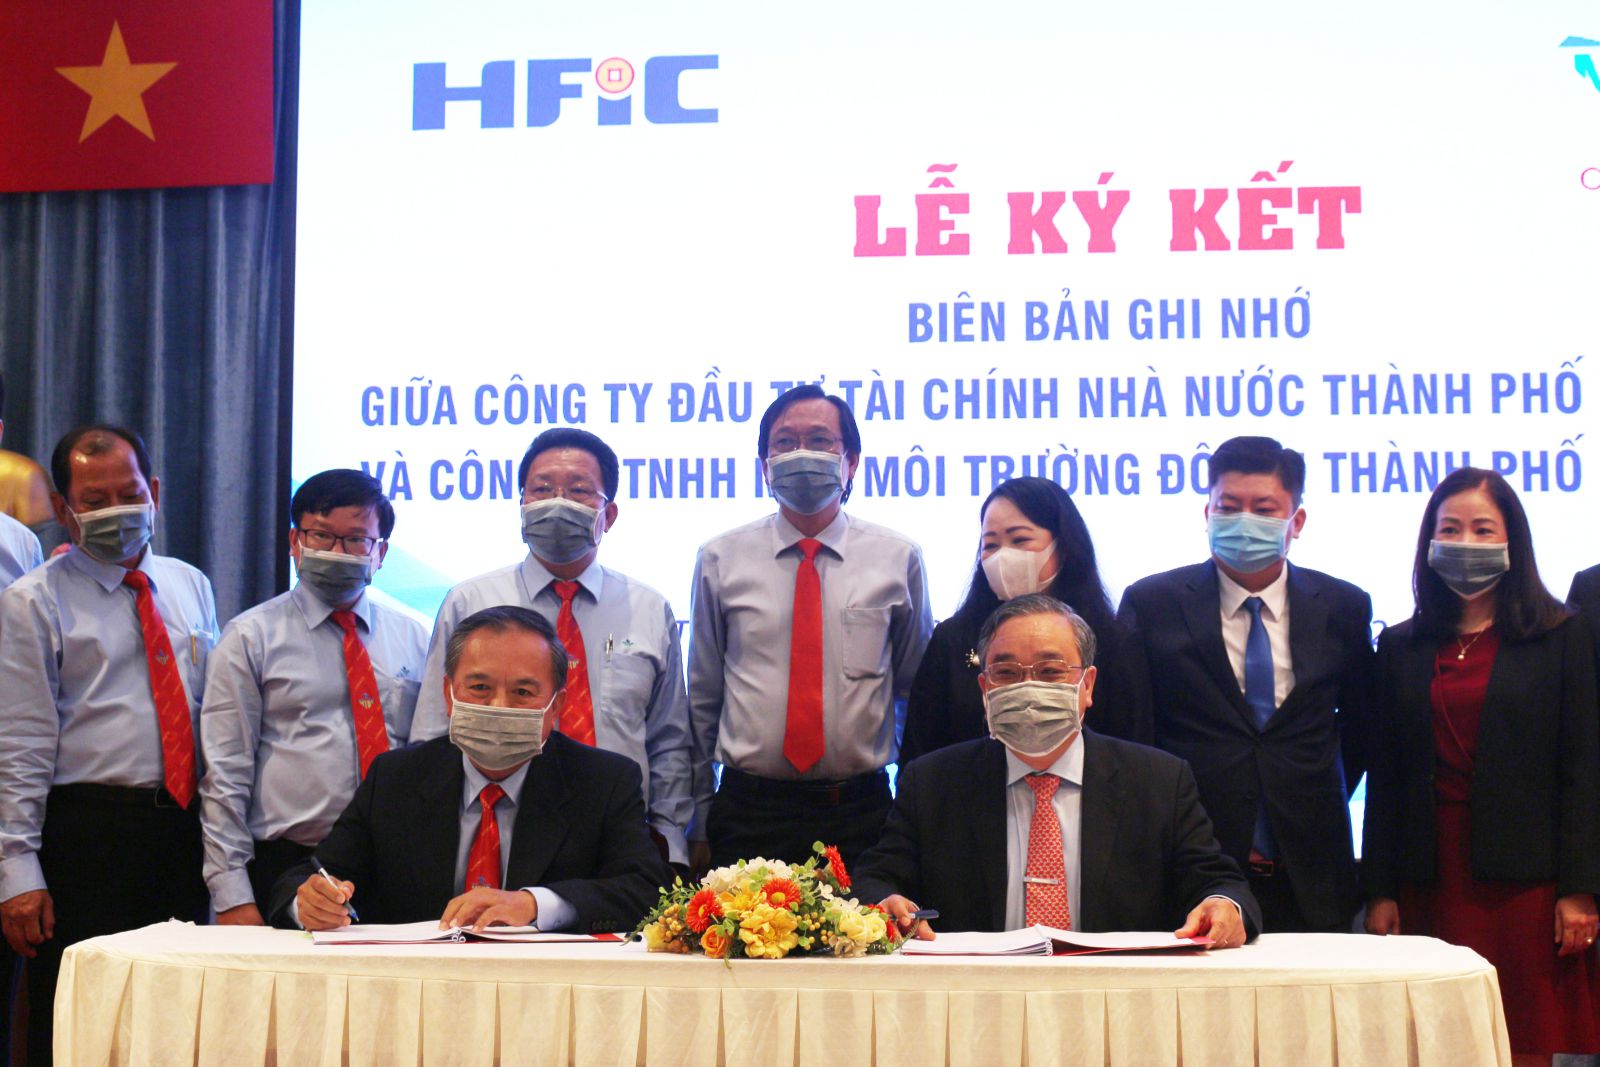 Dự án Hợp tác chiến lược toàn diện với Công ty Đầu tư Tài chính Nhà nước Thành phố Hồ Chí Minh